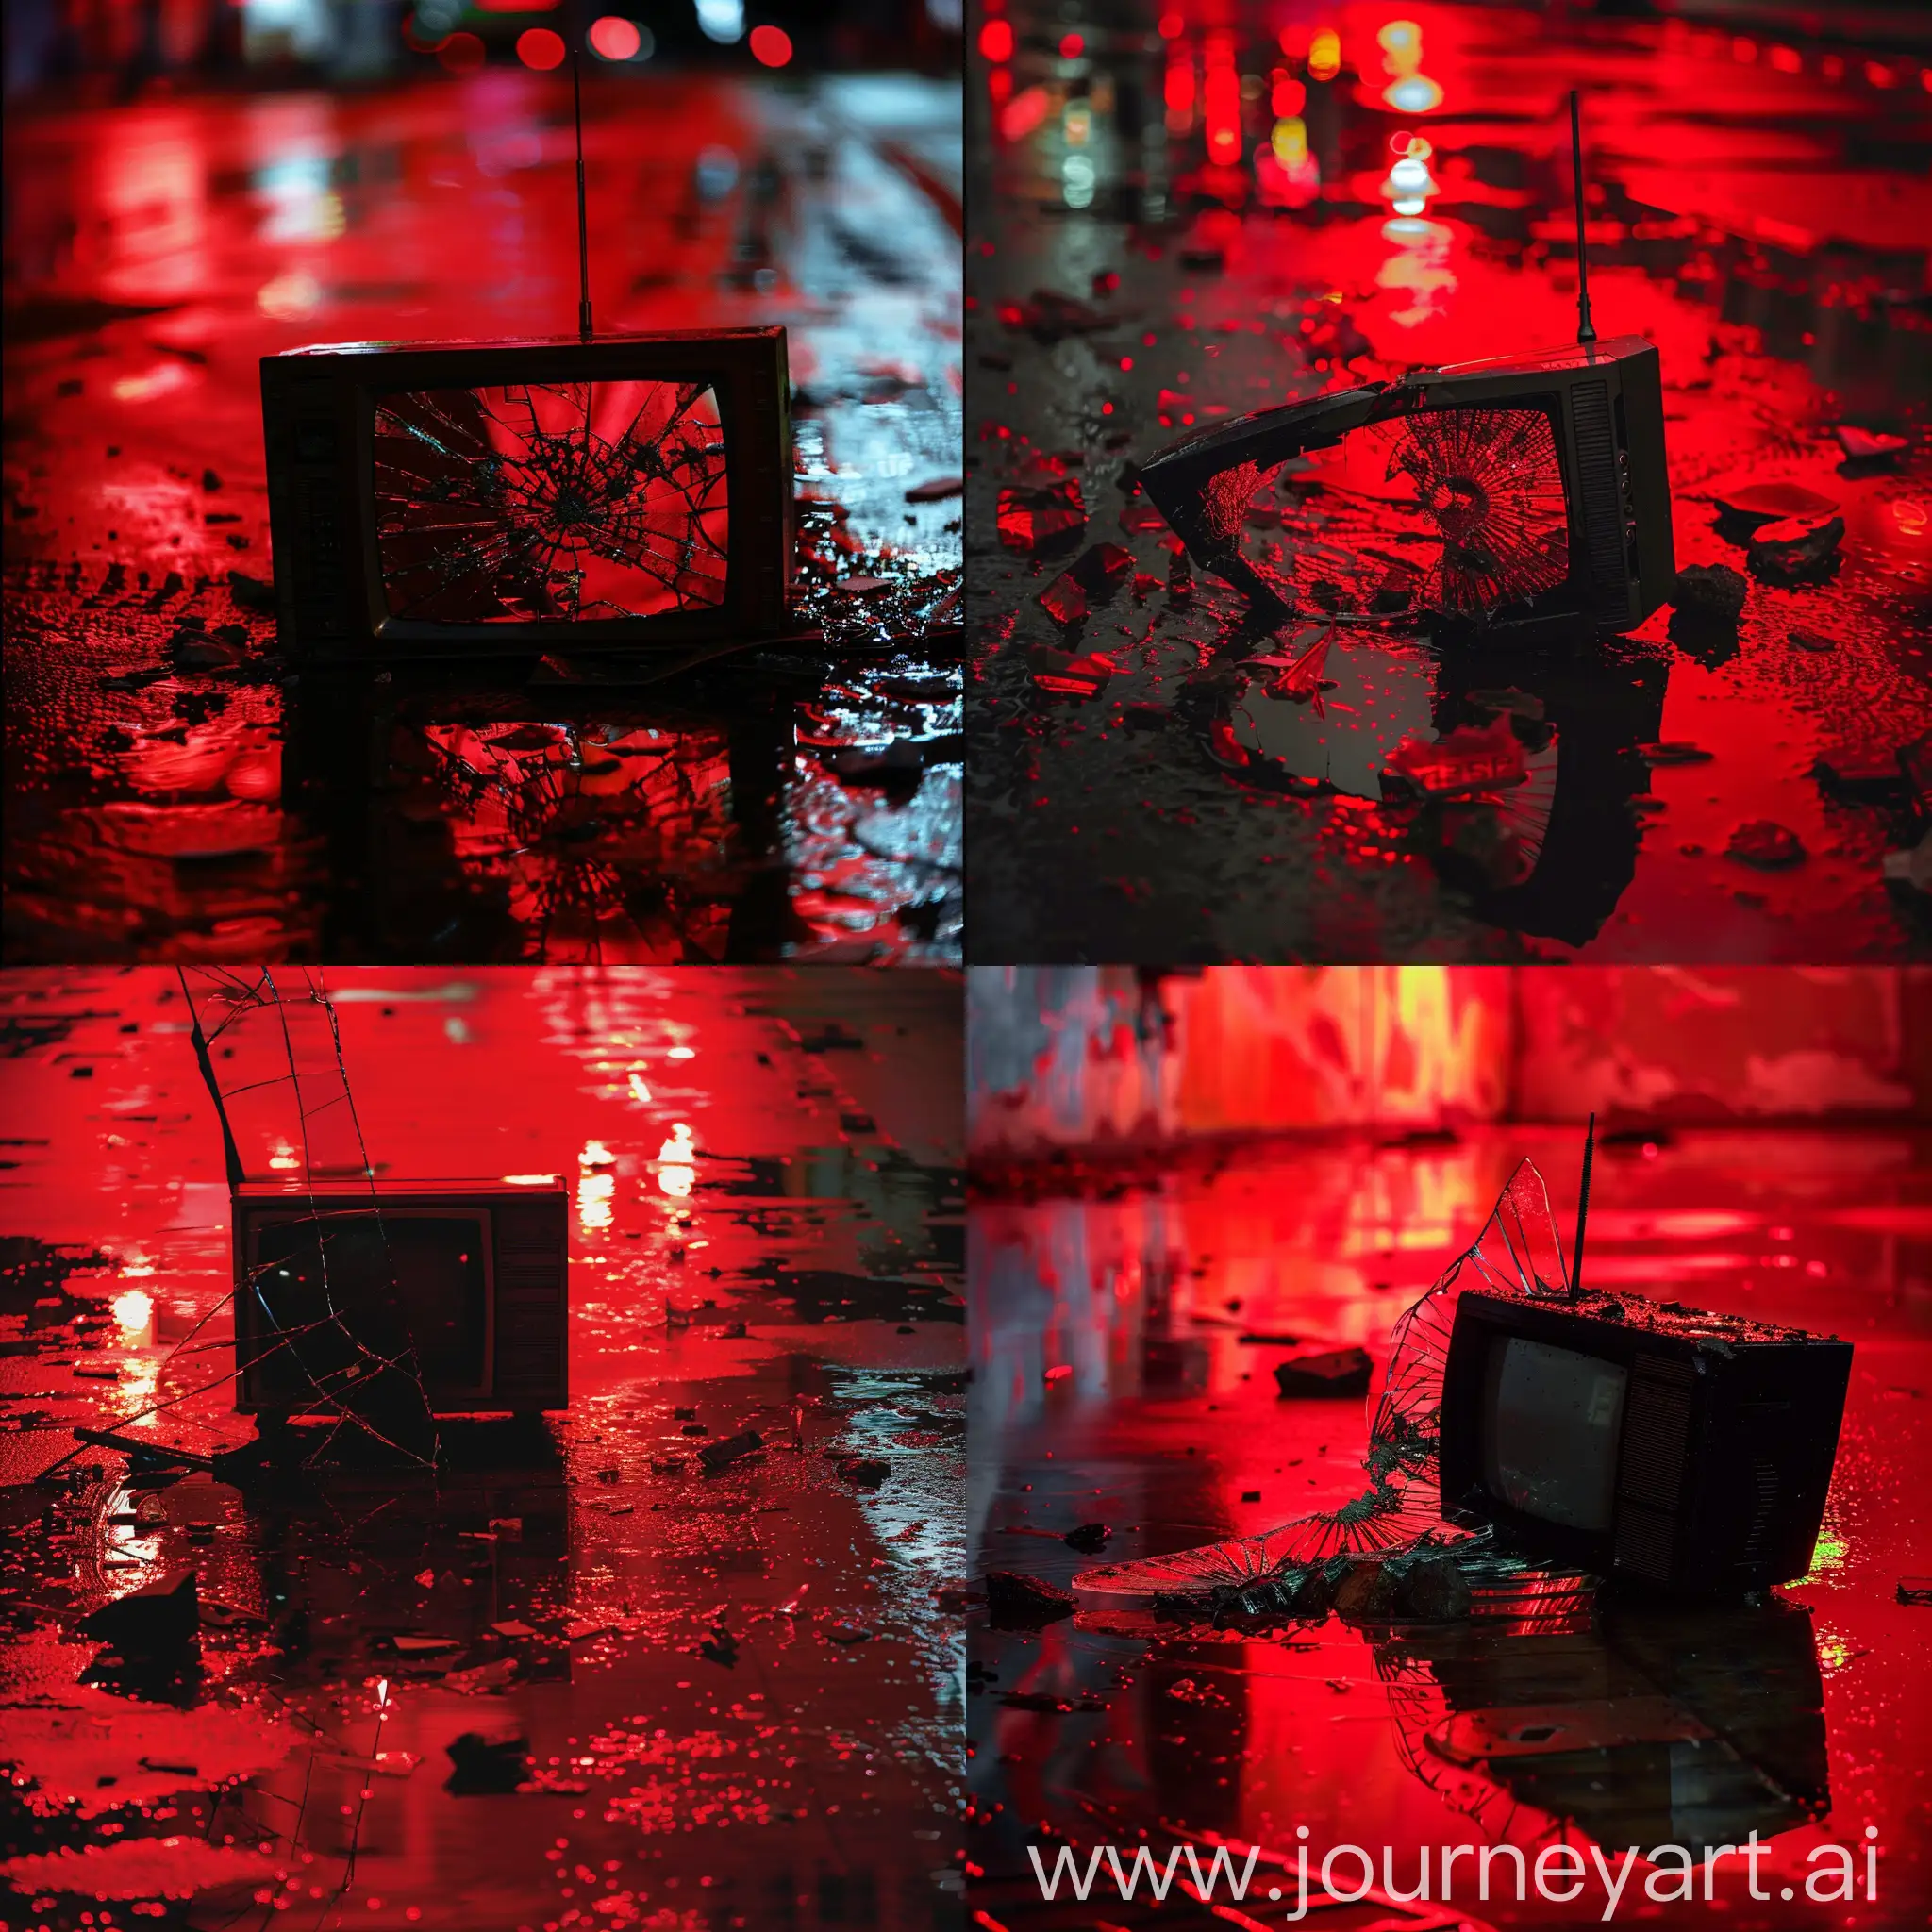 Broken-Television-on-Wet-Reflective-Floor-with-Red-Light-in-Dark-Tones